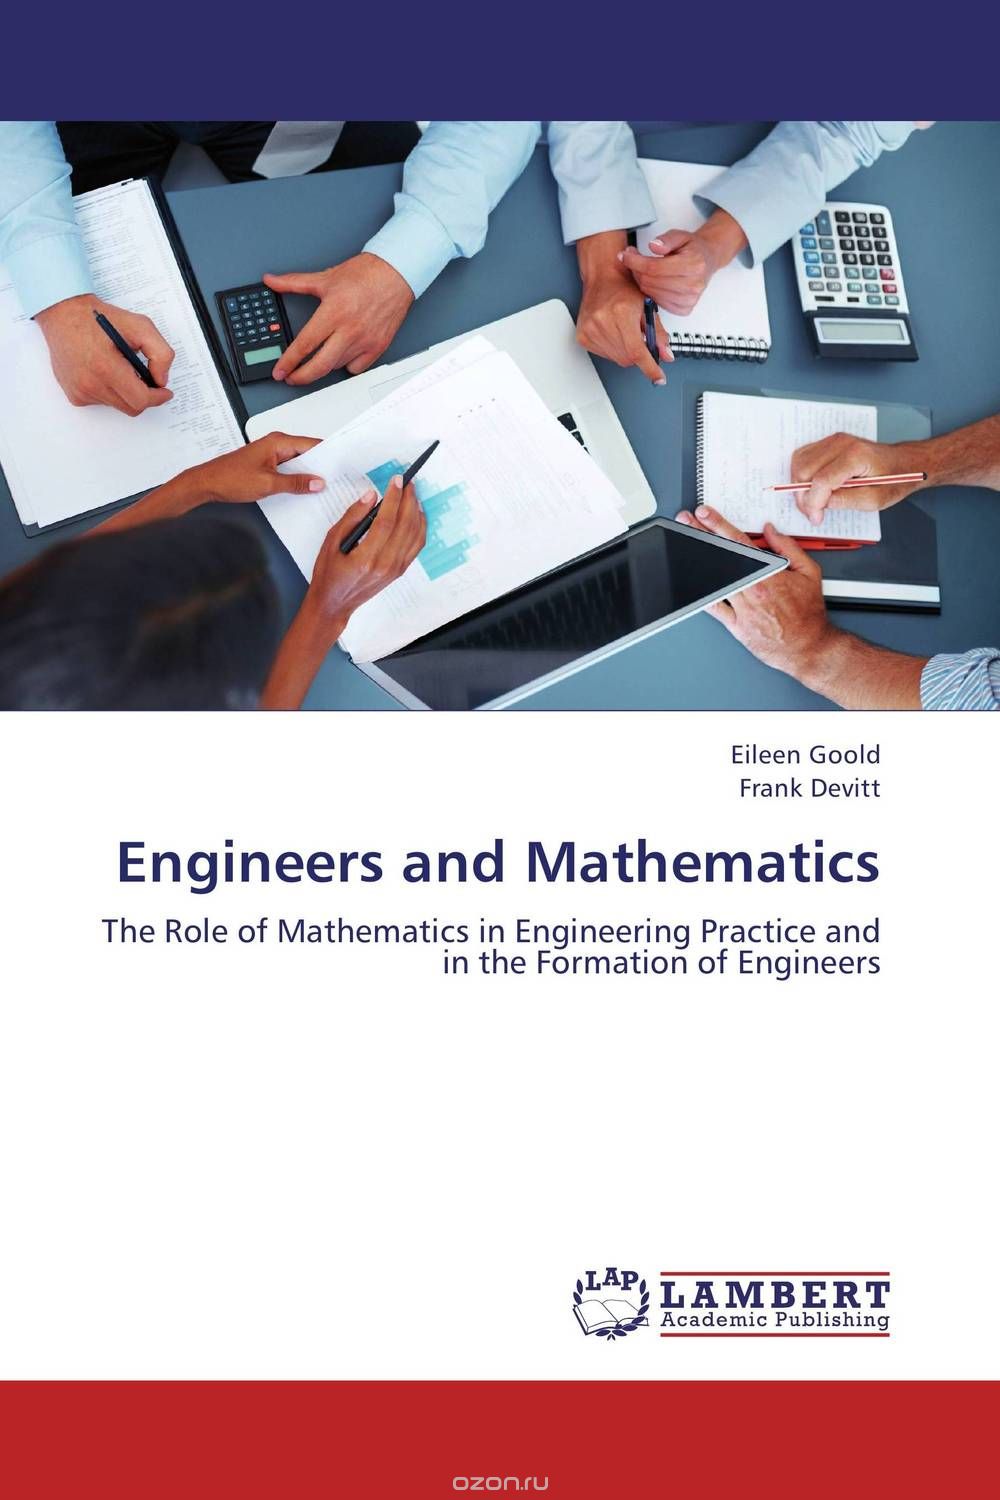 Скачать книгу "Engineers and Mathematics"